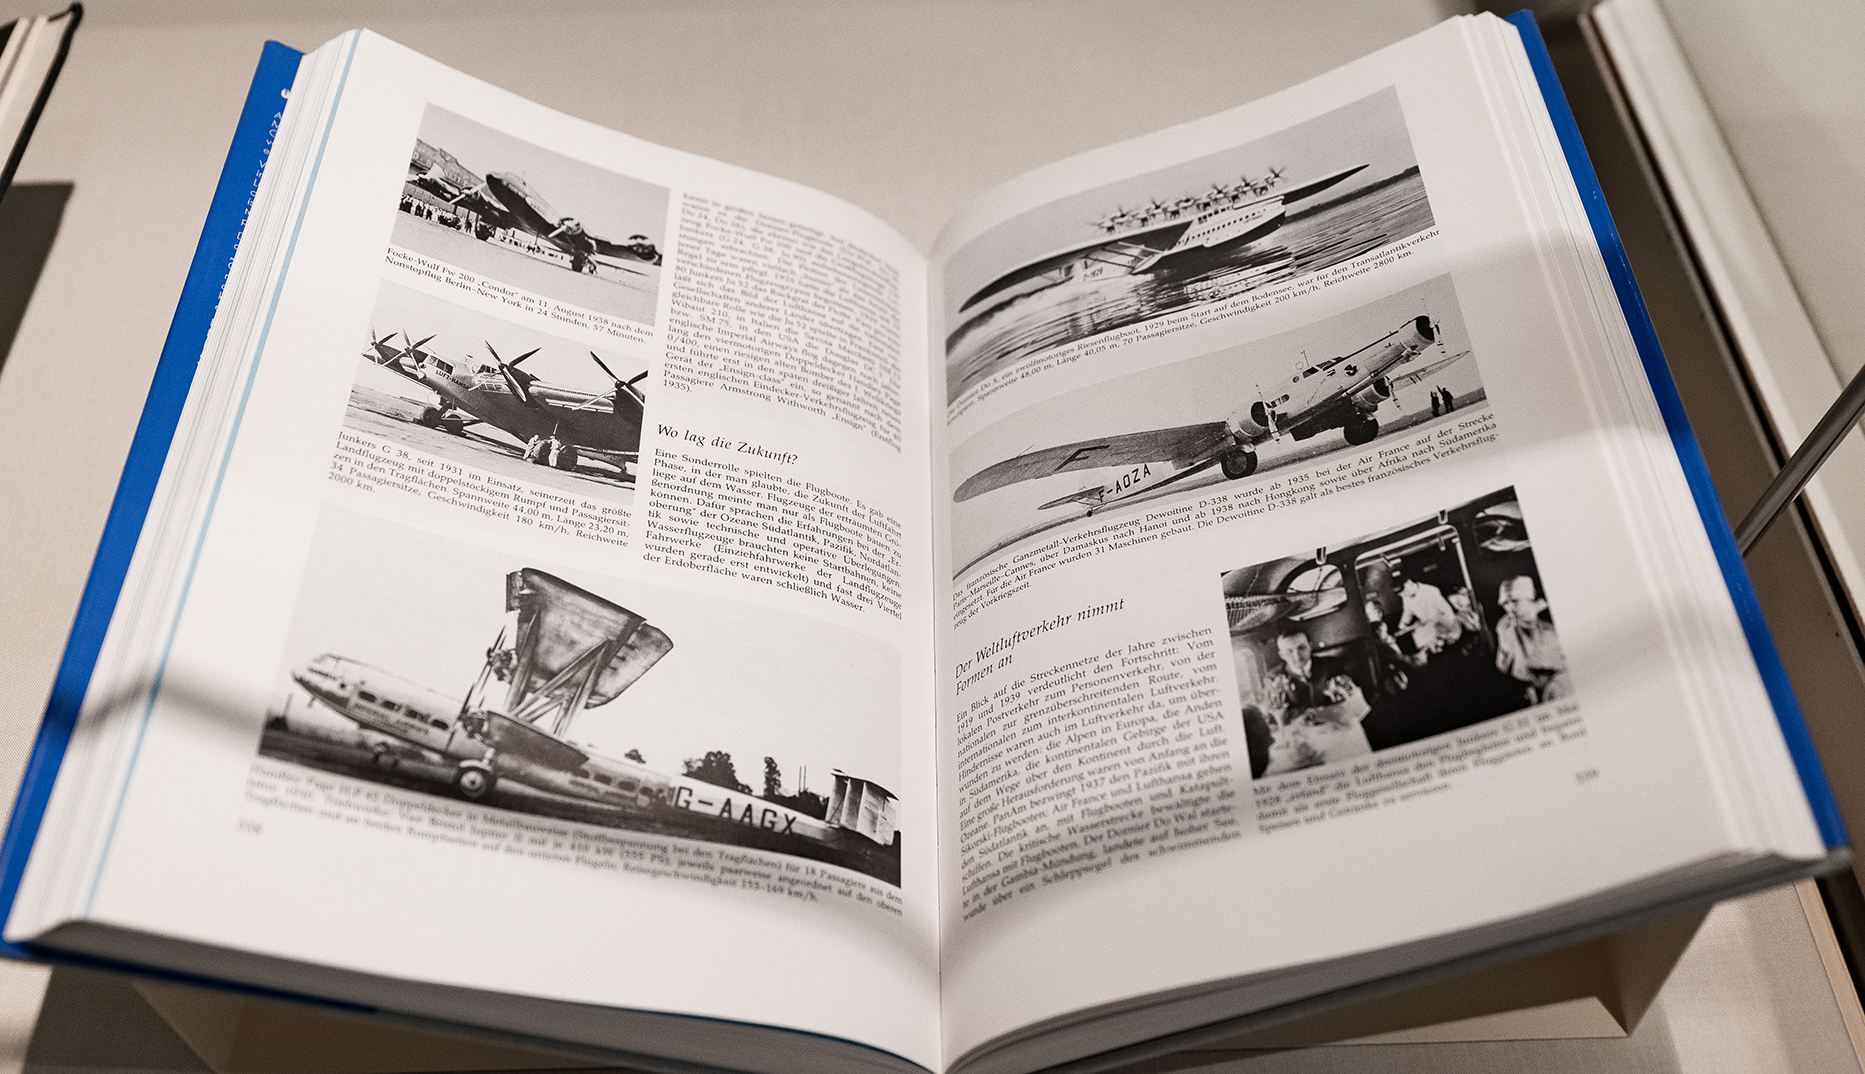 Geöffnetes Buch mit verschiedenen Schwarz-Weiß-Abbildungen von Flugzeugen